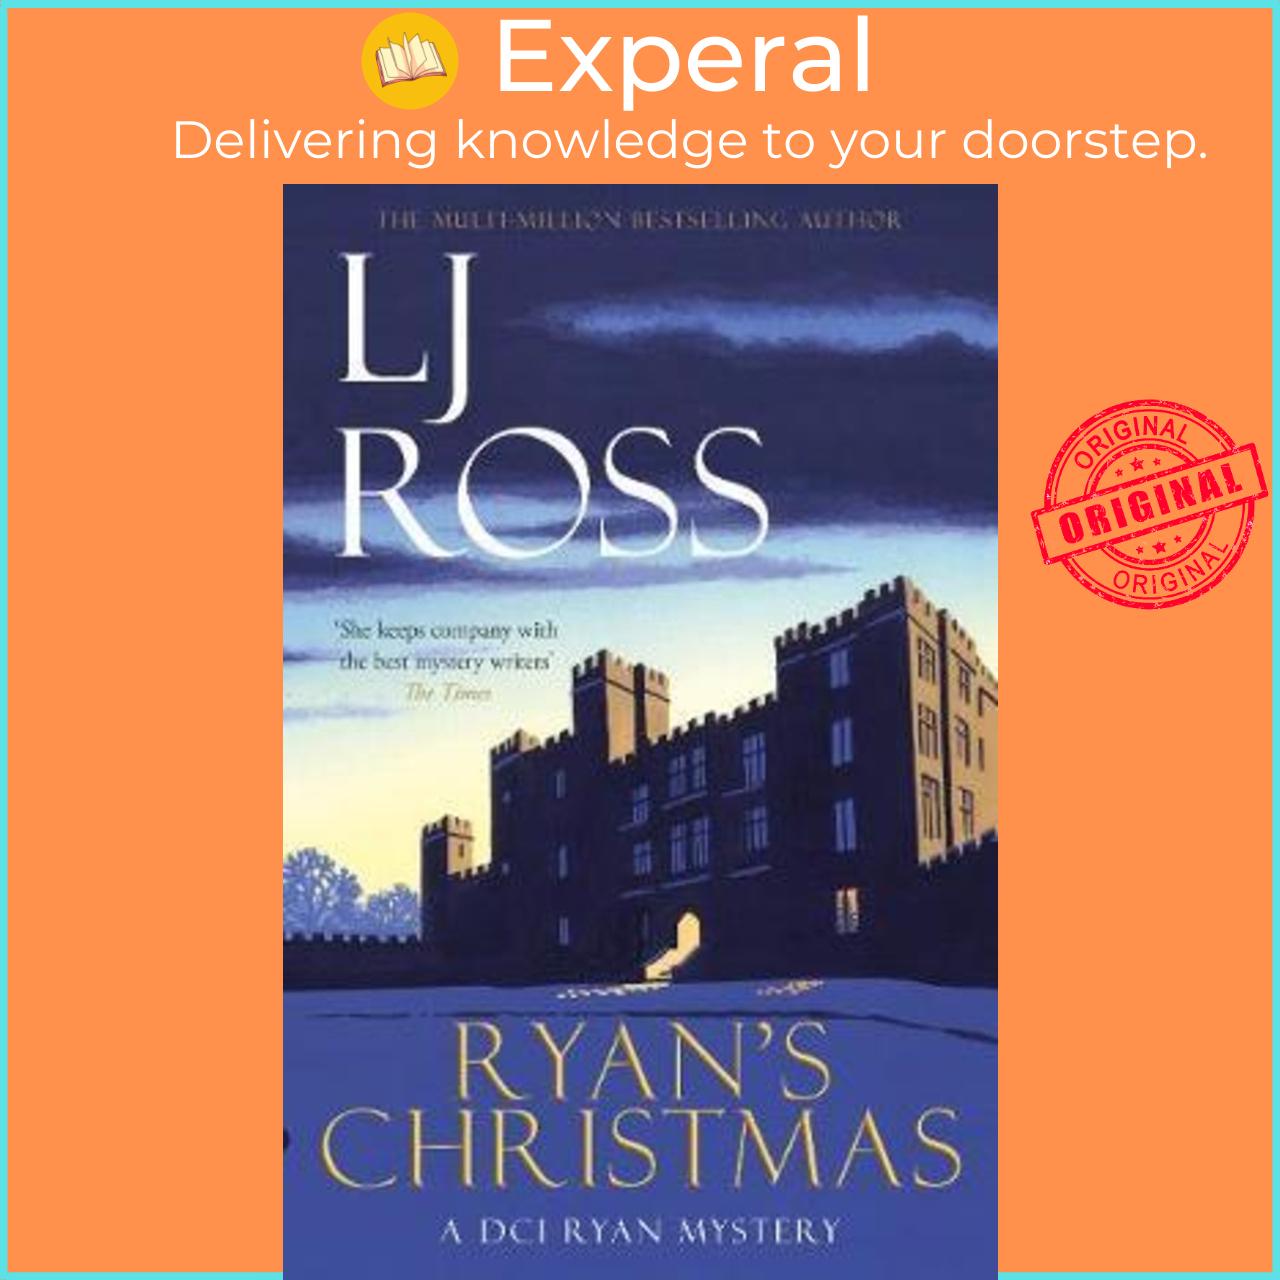 Sách - Ryan's Christmas : A DCI Ryan Mystery by Lj Ross (UK edition, paperback)